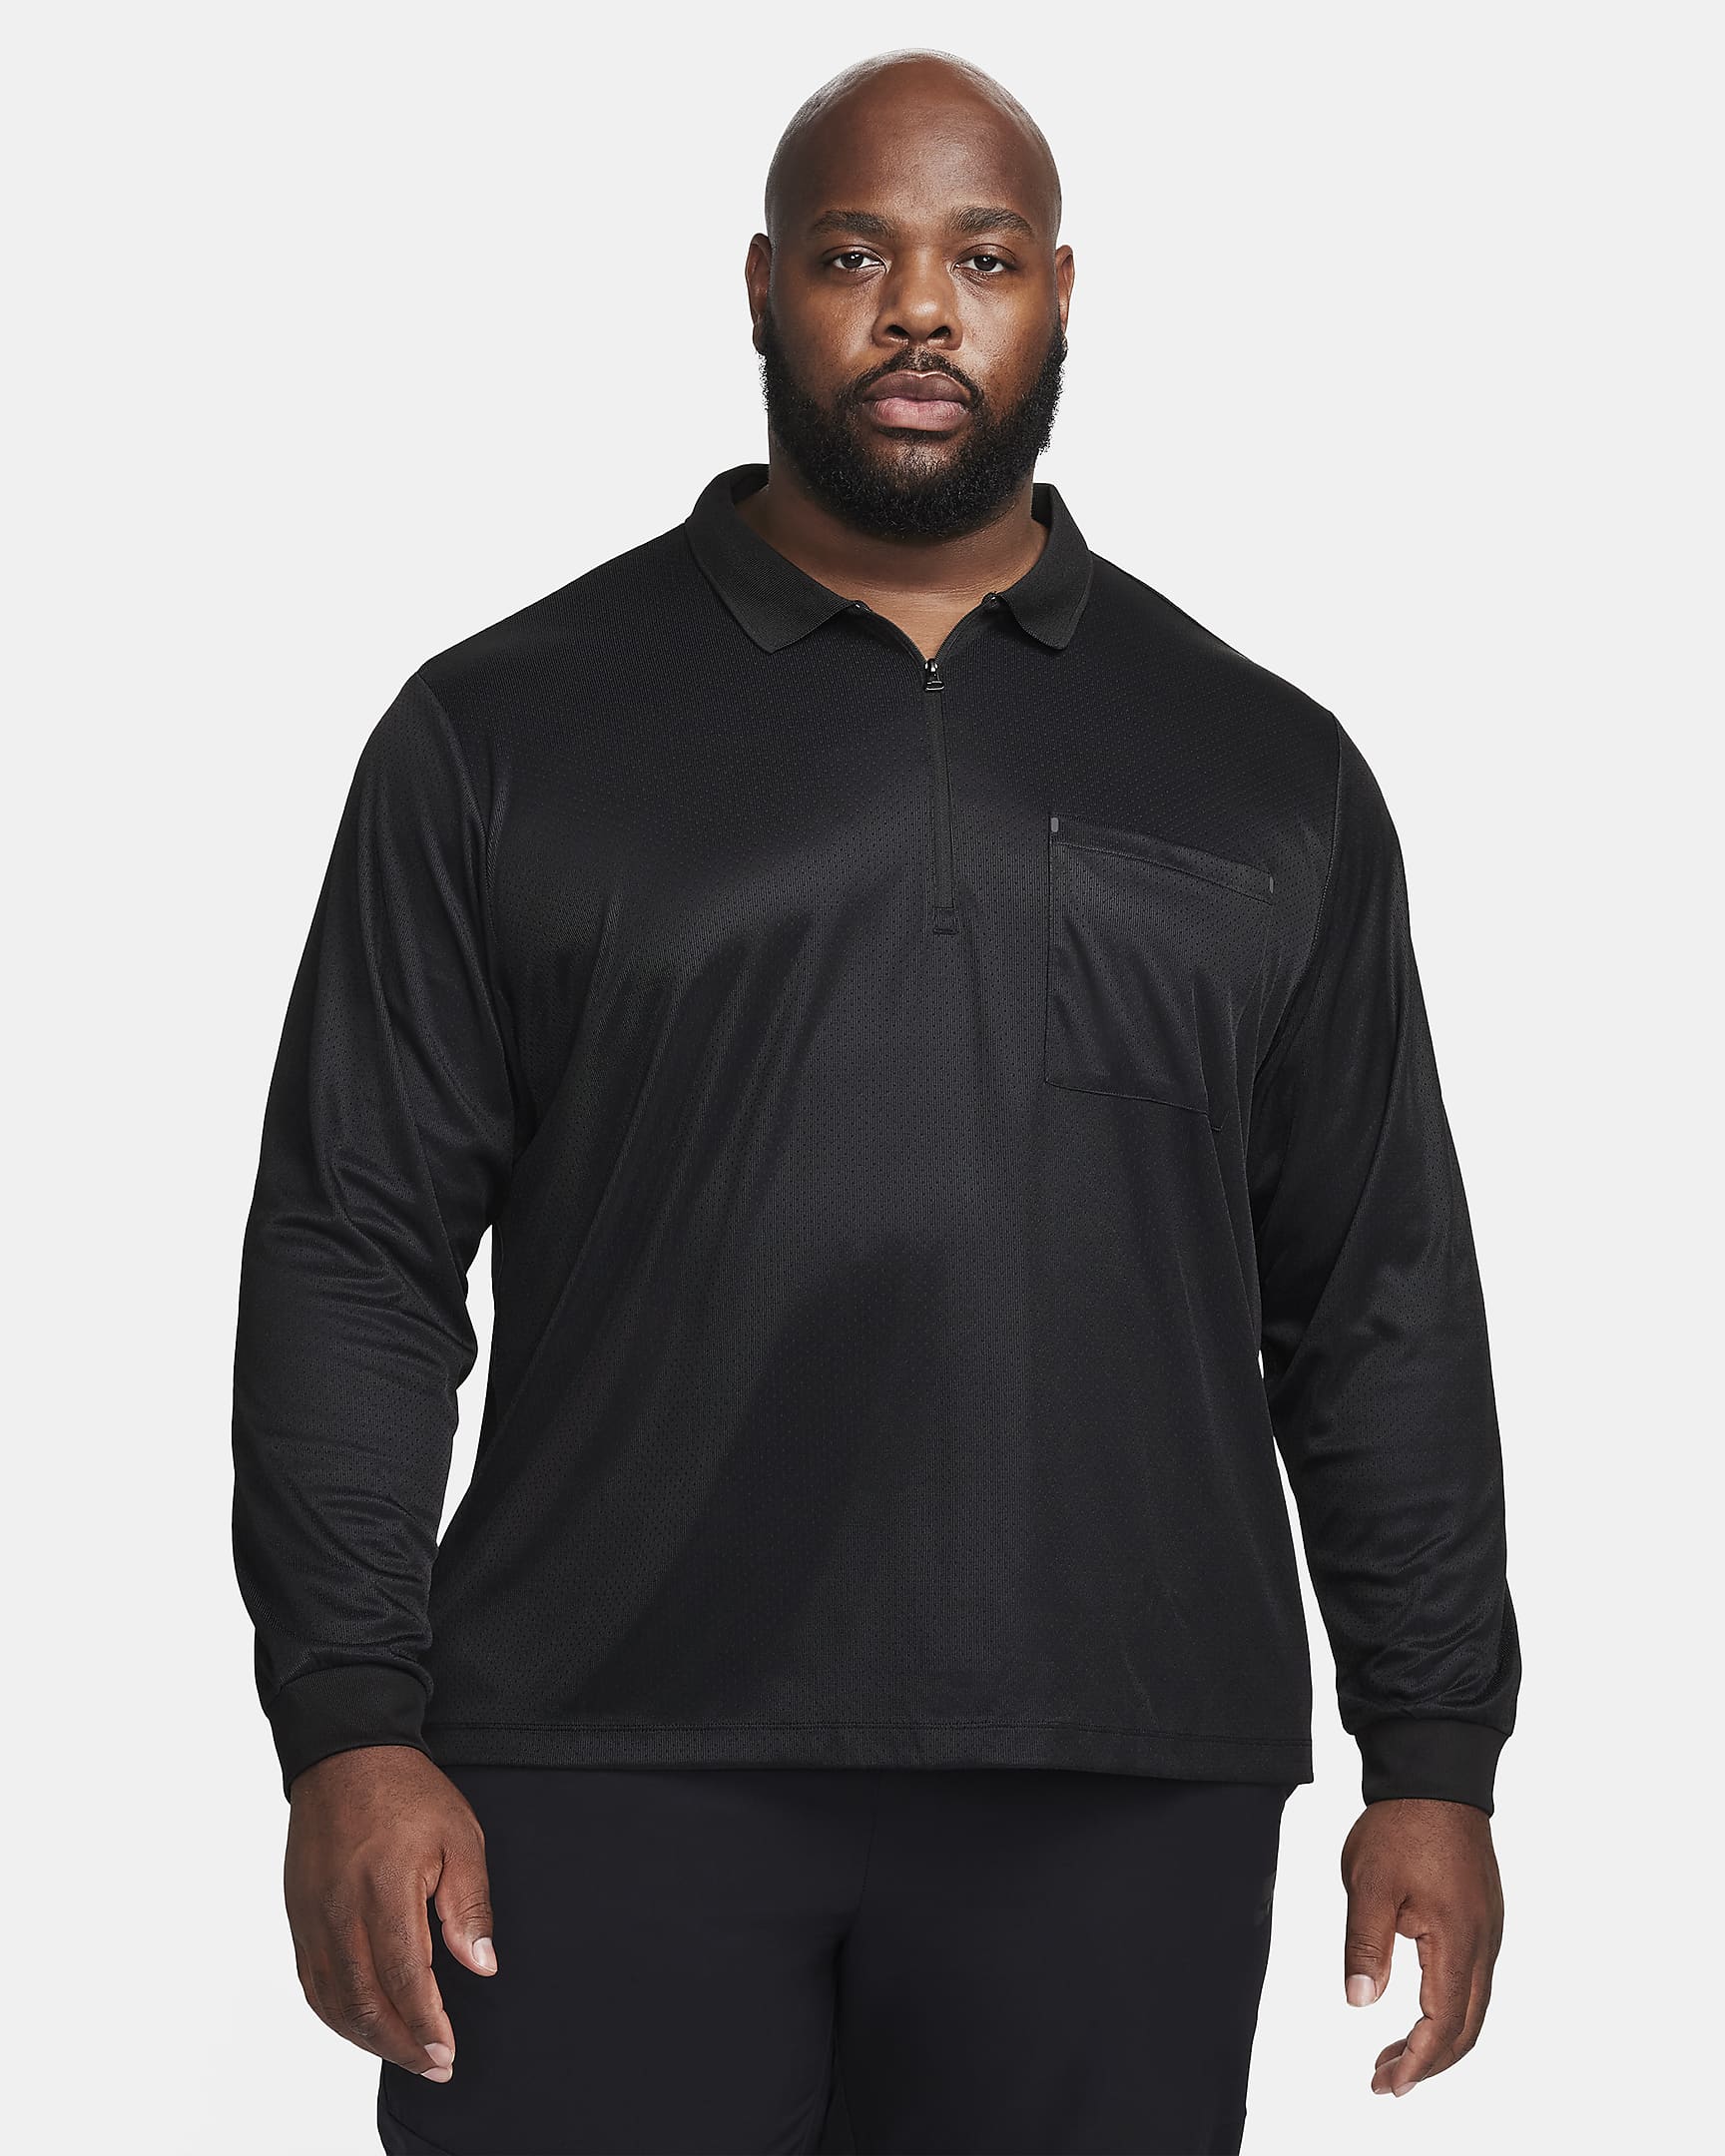 Nike Sportswear Tech Pack Men's Dri-FIT 1/2-Zip Long-Sleeve Top. Nike HR